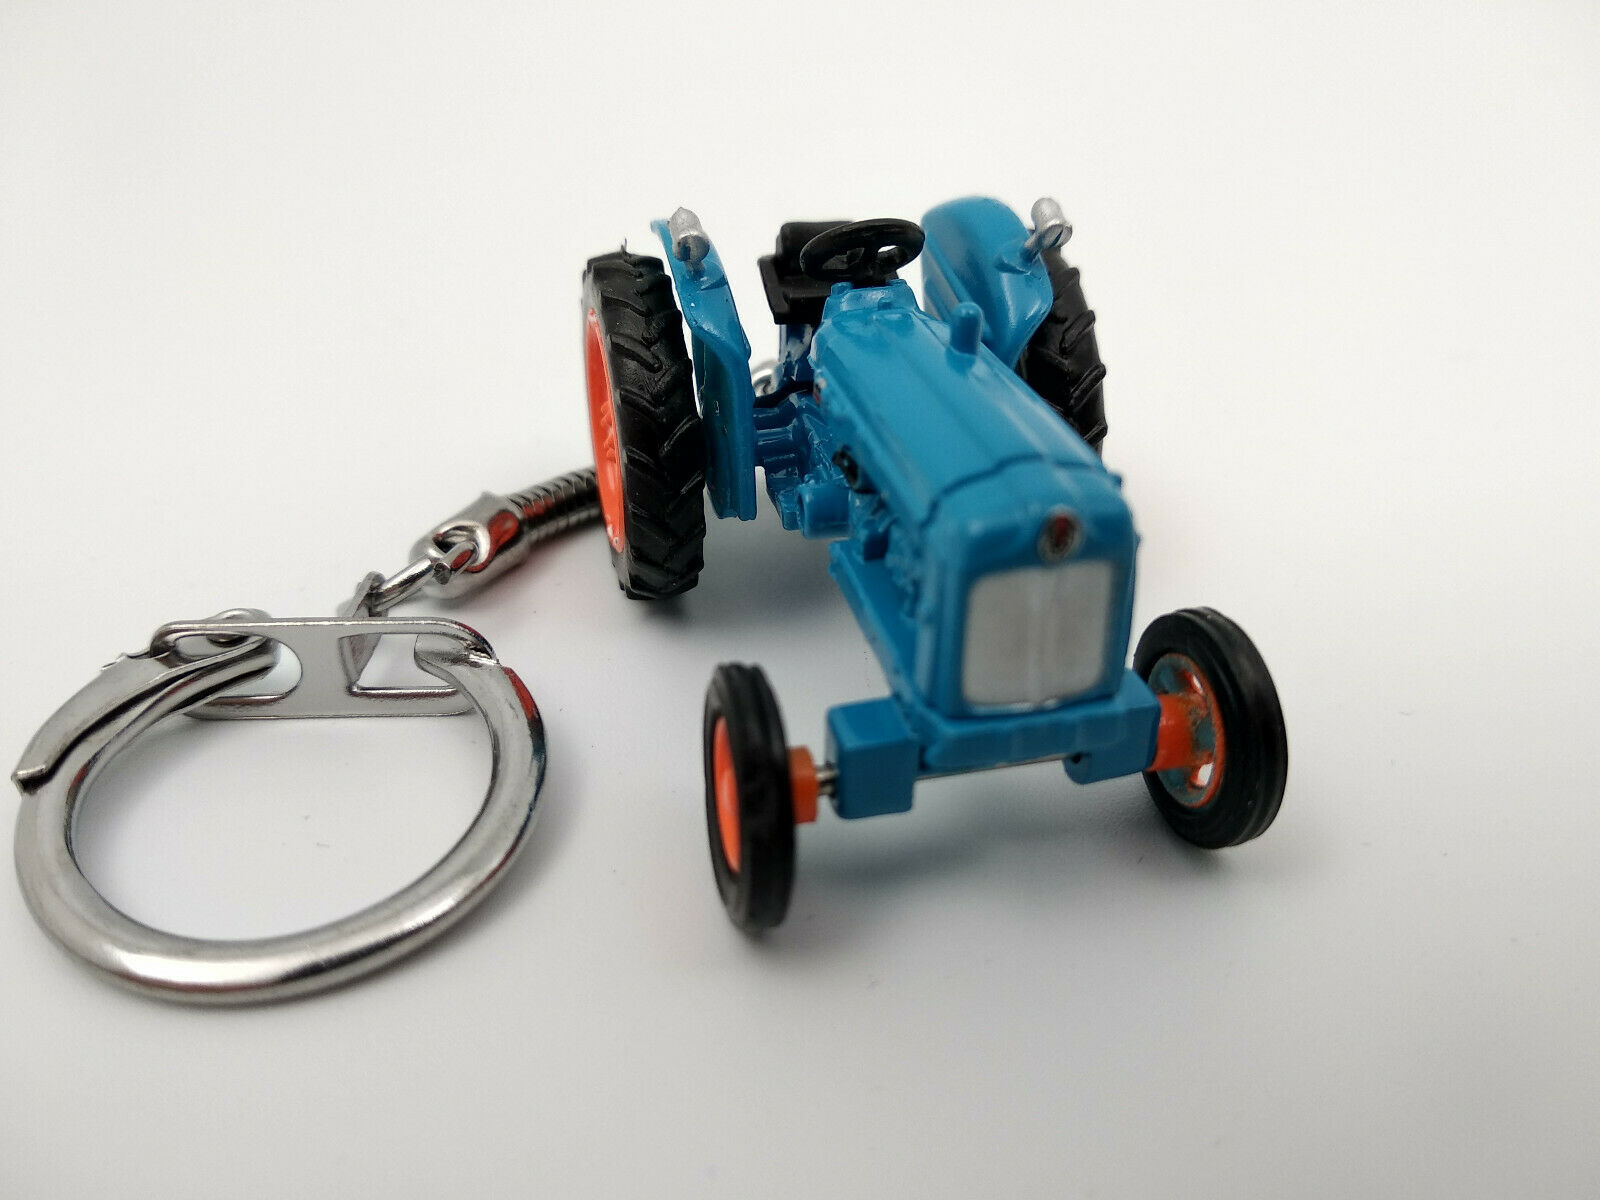 Porte clé tracteur agricole bleu en métal • Ateepique